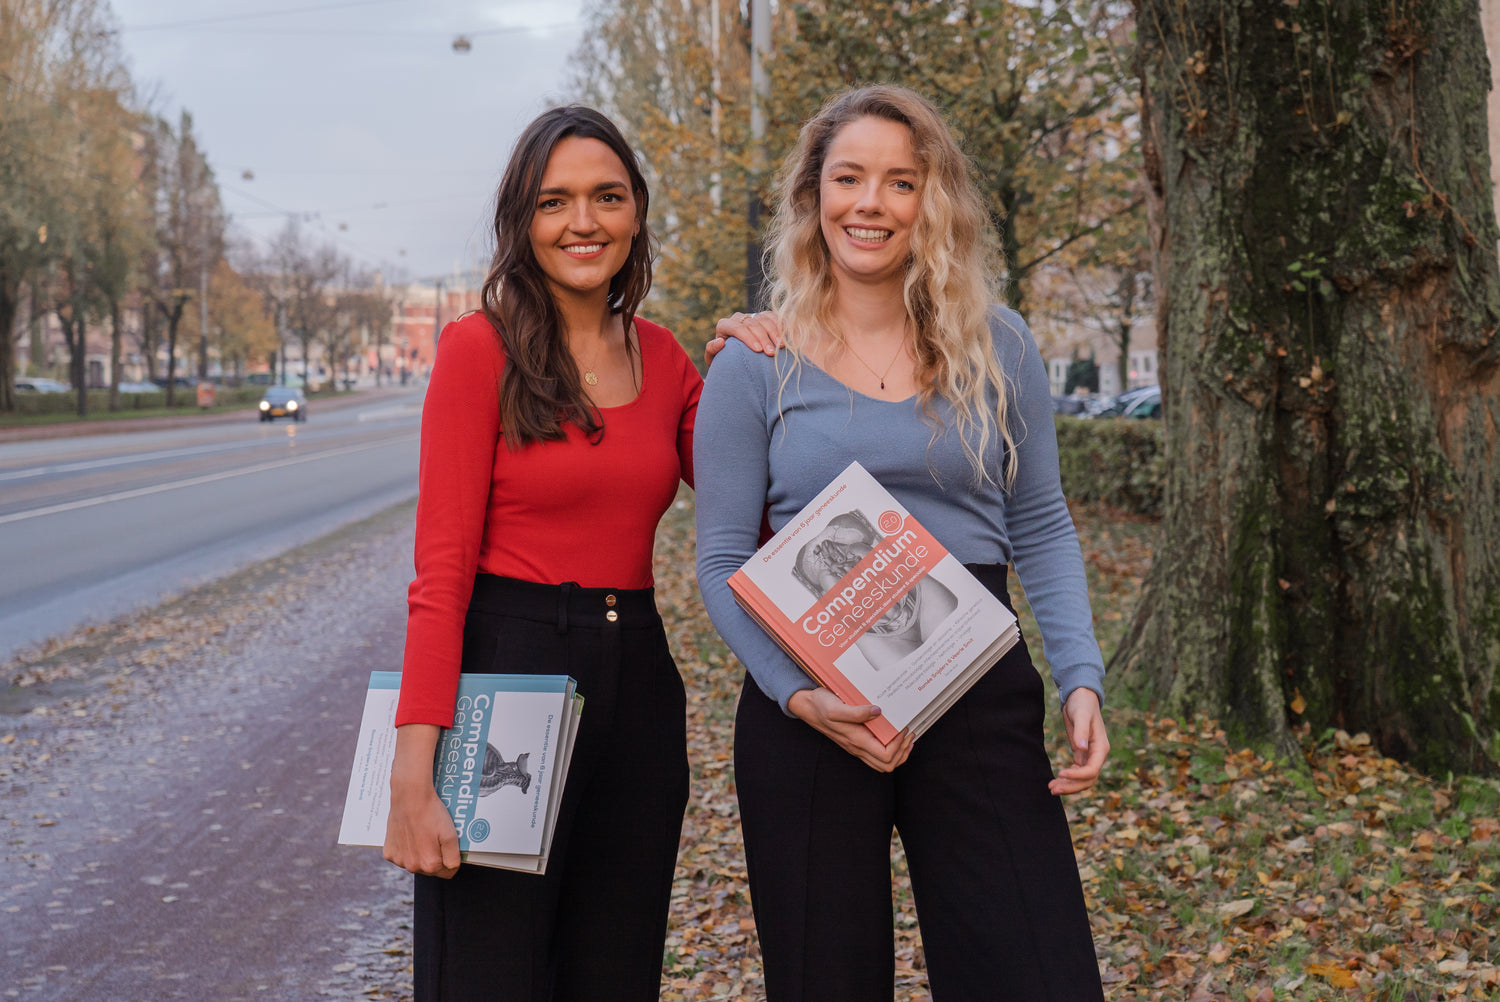 Romée Snijders en Veerle Smit met in hun handen de Compendium boeken